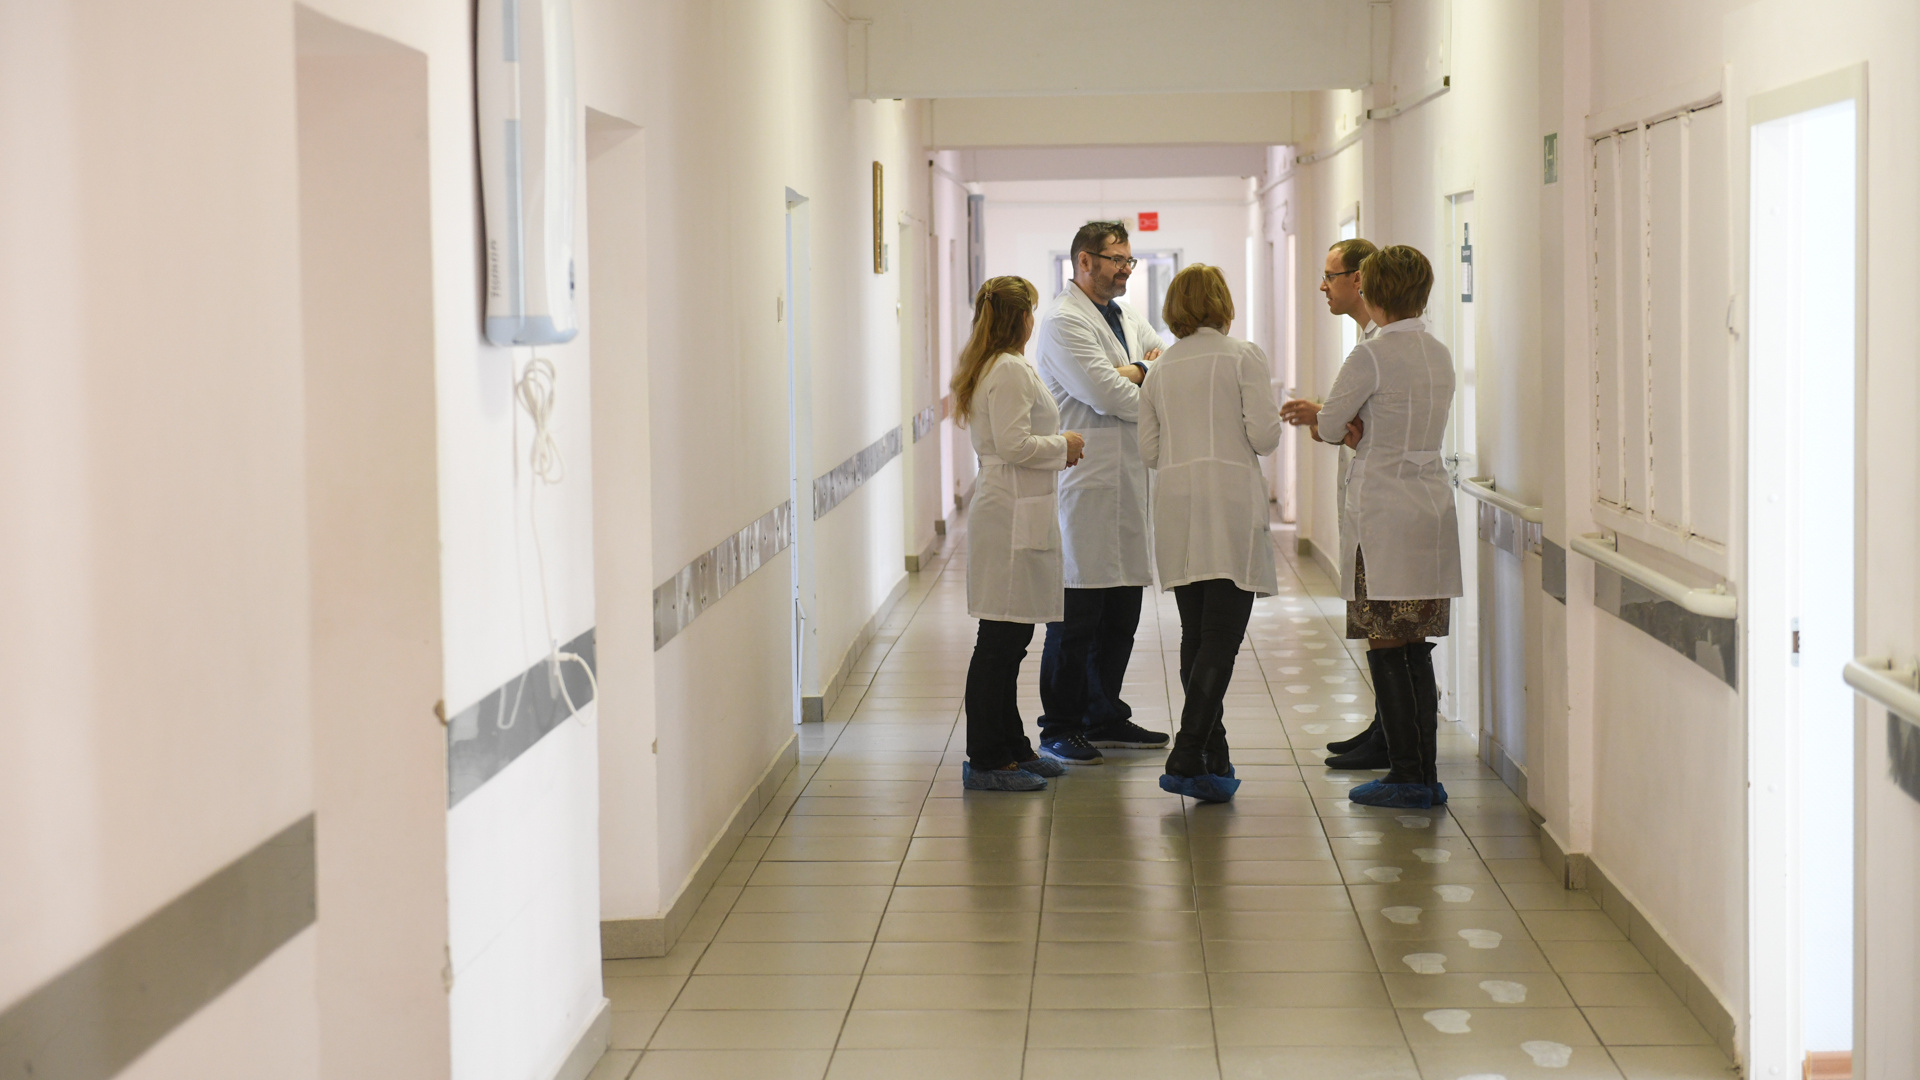 Даже офтальмологи лечат пациентов с COVID-19: сотрудница 6-й больницы — о работе во время пандемии